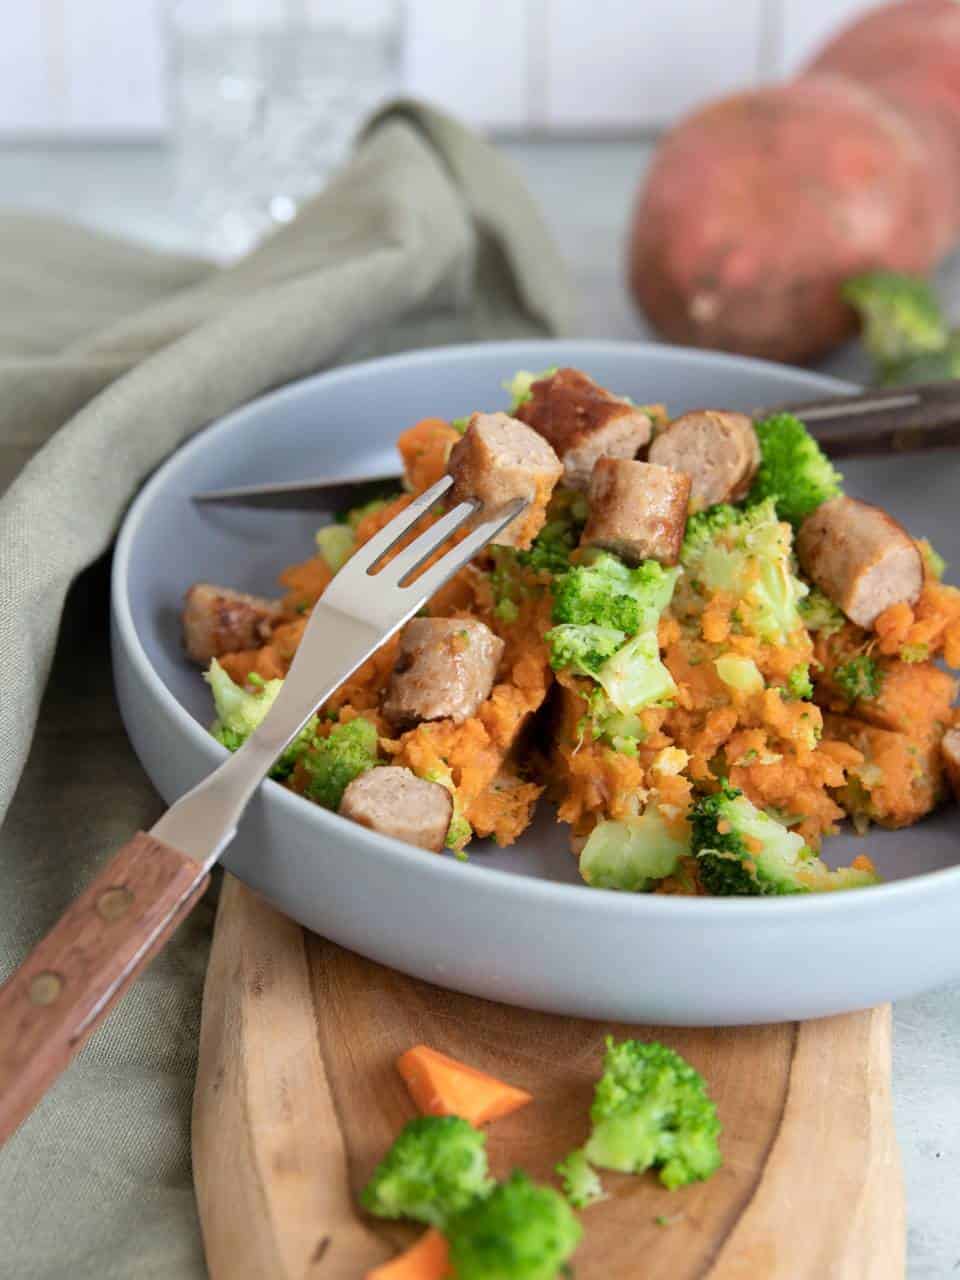 Zoete aardappel stamppot met broccoli. Dit is een makkelijk stamppot recept met zoete aardappel en broccoli dat net even anders is, heerlijk! Dit stamppot recept zet je snel op tafel, is makkelijk te maken en nog gezond ook. Bekijk hier het recept. kelijke gezonde maaltijd